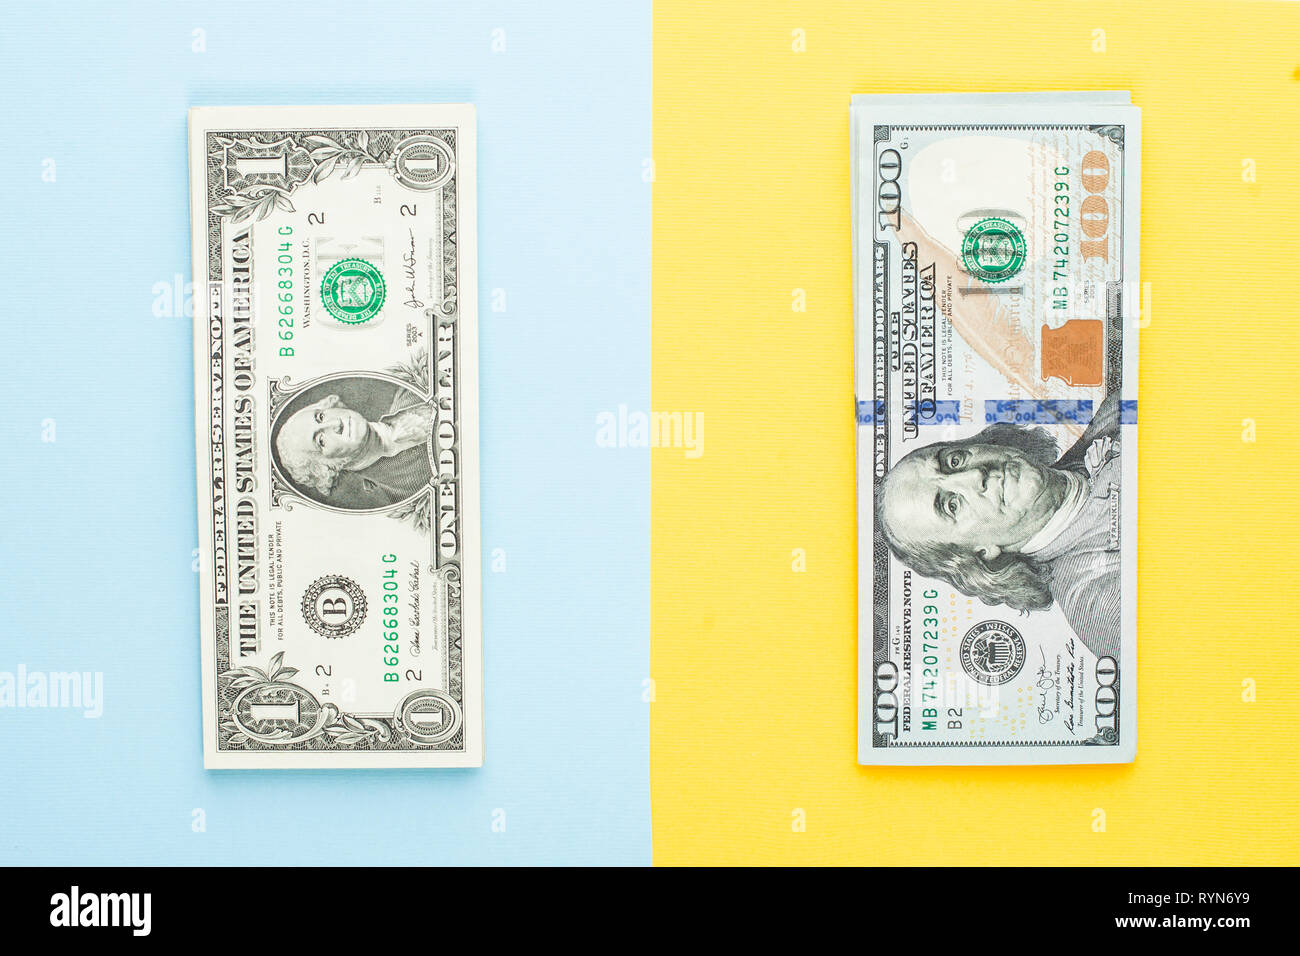 Kommerzielle Geldanlage gewinn Konzept. 1 US-Dollar und 100 Dollar. Haufen von 1 US-Dollar Banknote und Hundert us-Dollar Scheine auf Blau und Gelb b Stockfoto